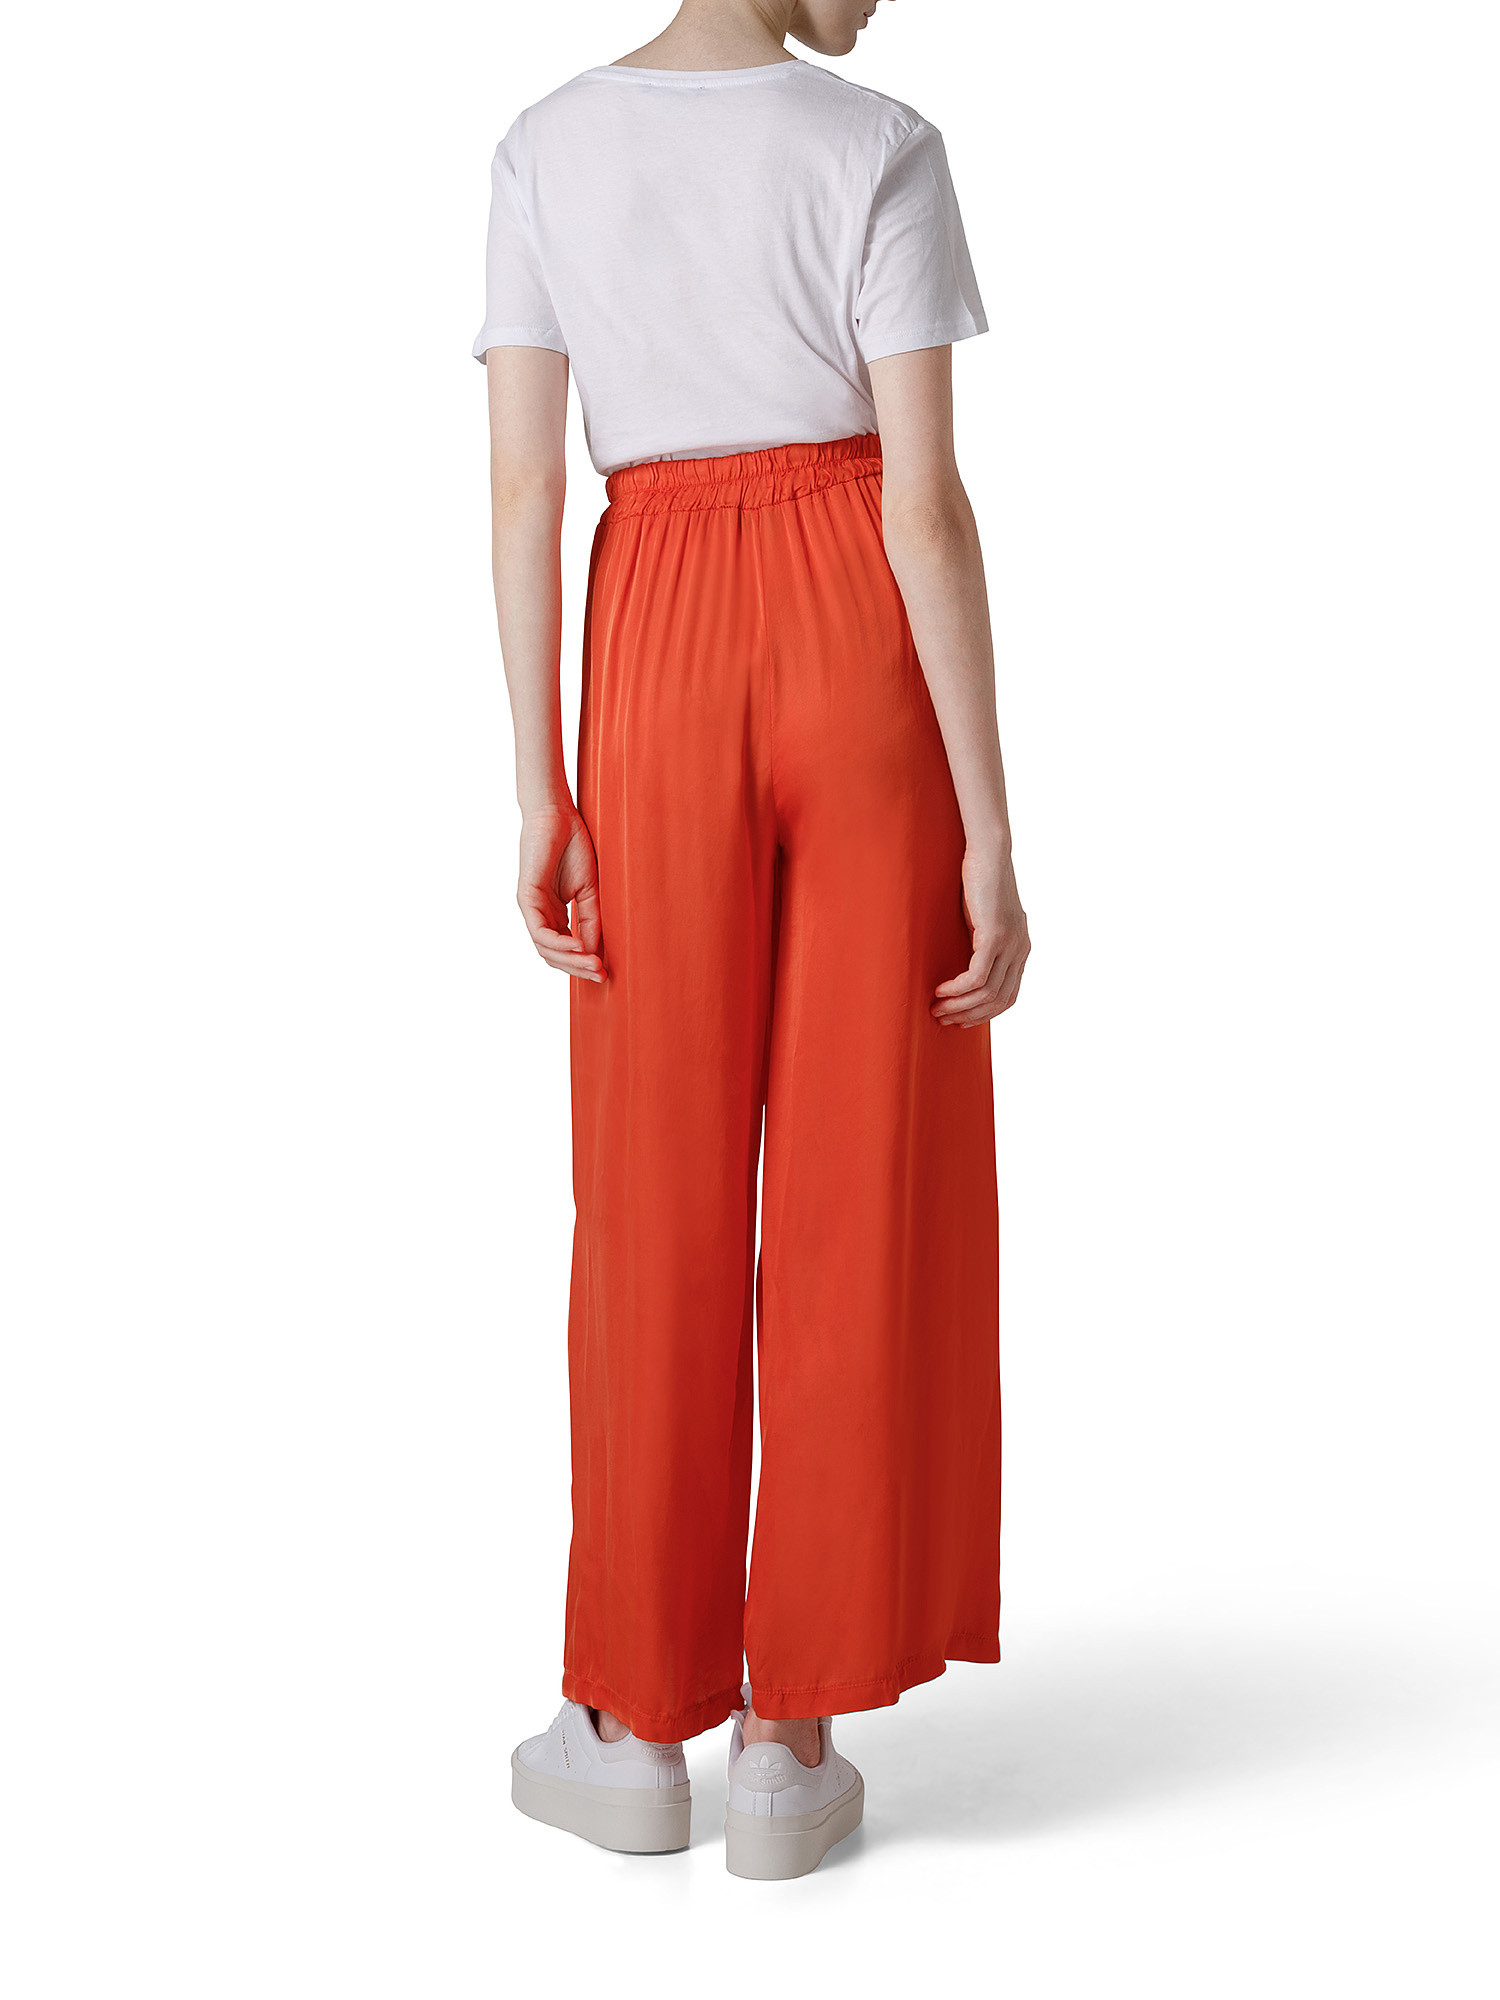 Pantalone in viscosa, Arancione, large